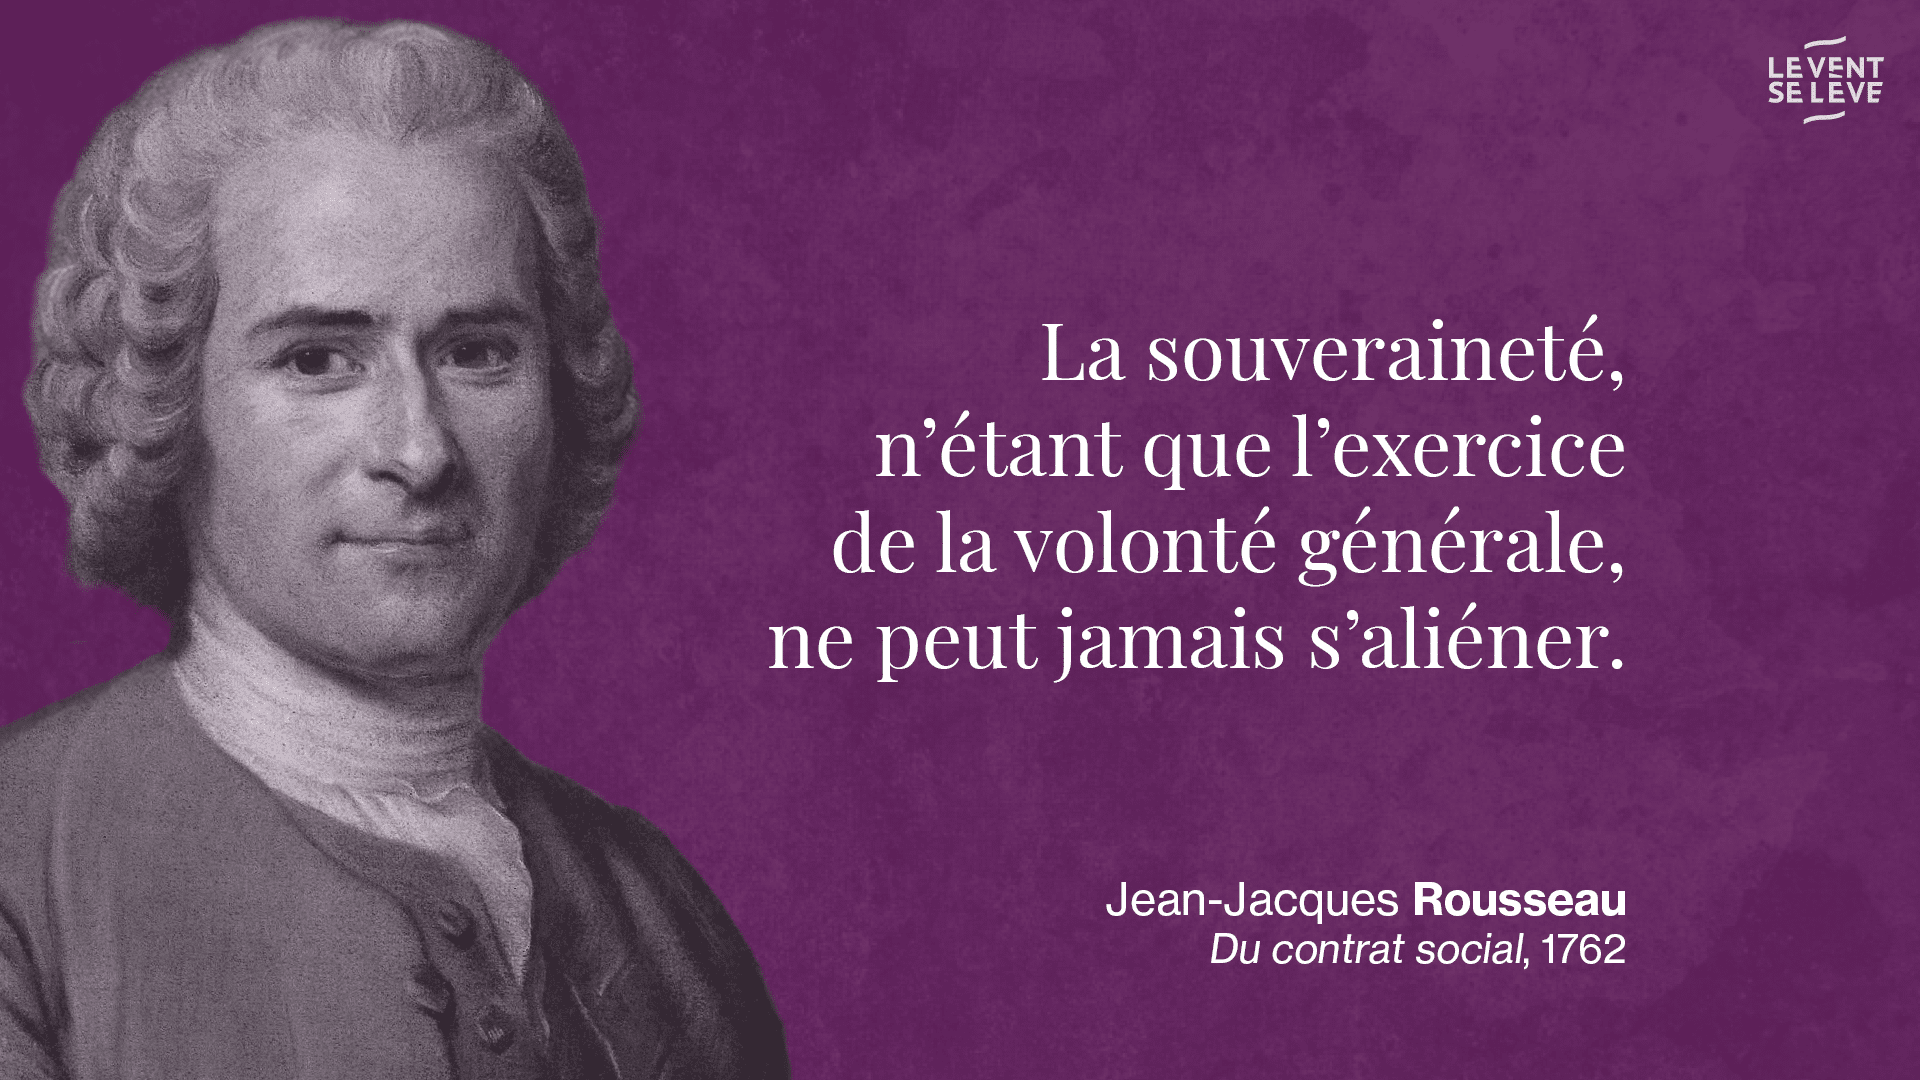 Rousseau-souveraineté.png (1920×1080)